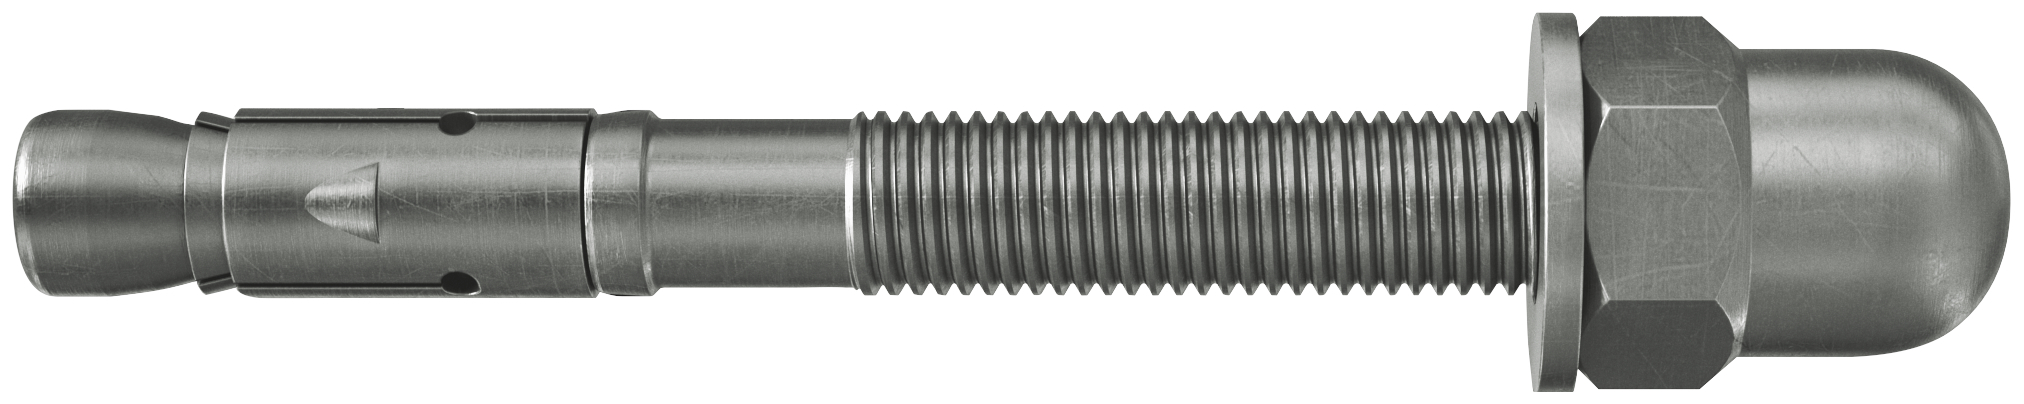 fischer Tassello acciaio FAZ II 10-20 H A4 (20 Pz.) L'ancorante ad espansione ad alte prestazioni per carichi statici su calcestruzzo fessurato e per applicazioni sismiche. Versione con dado cieco con classe di resistenza alla corrosione CRC III. fie3240